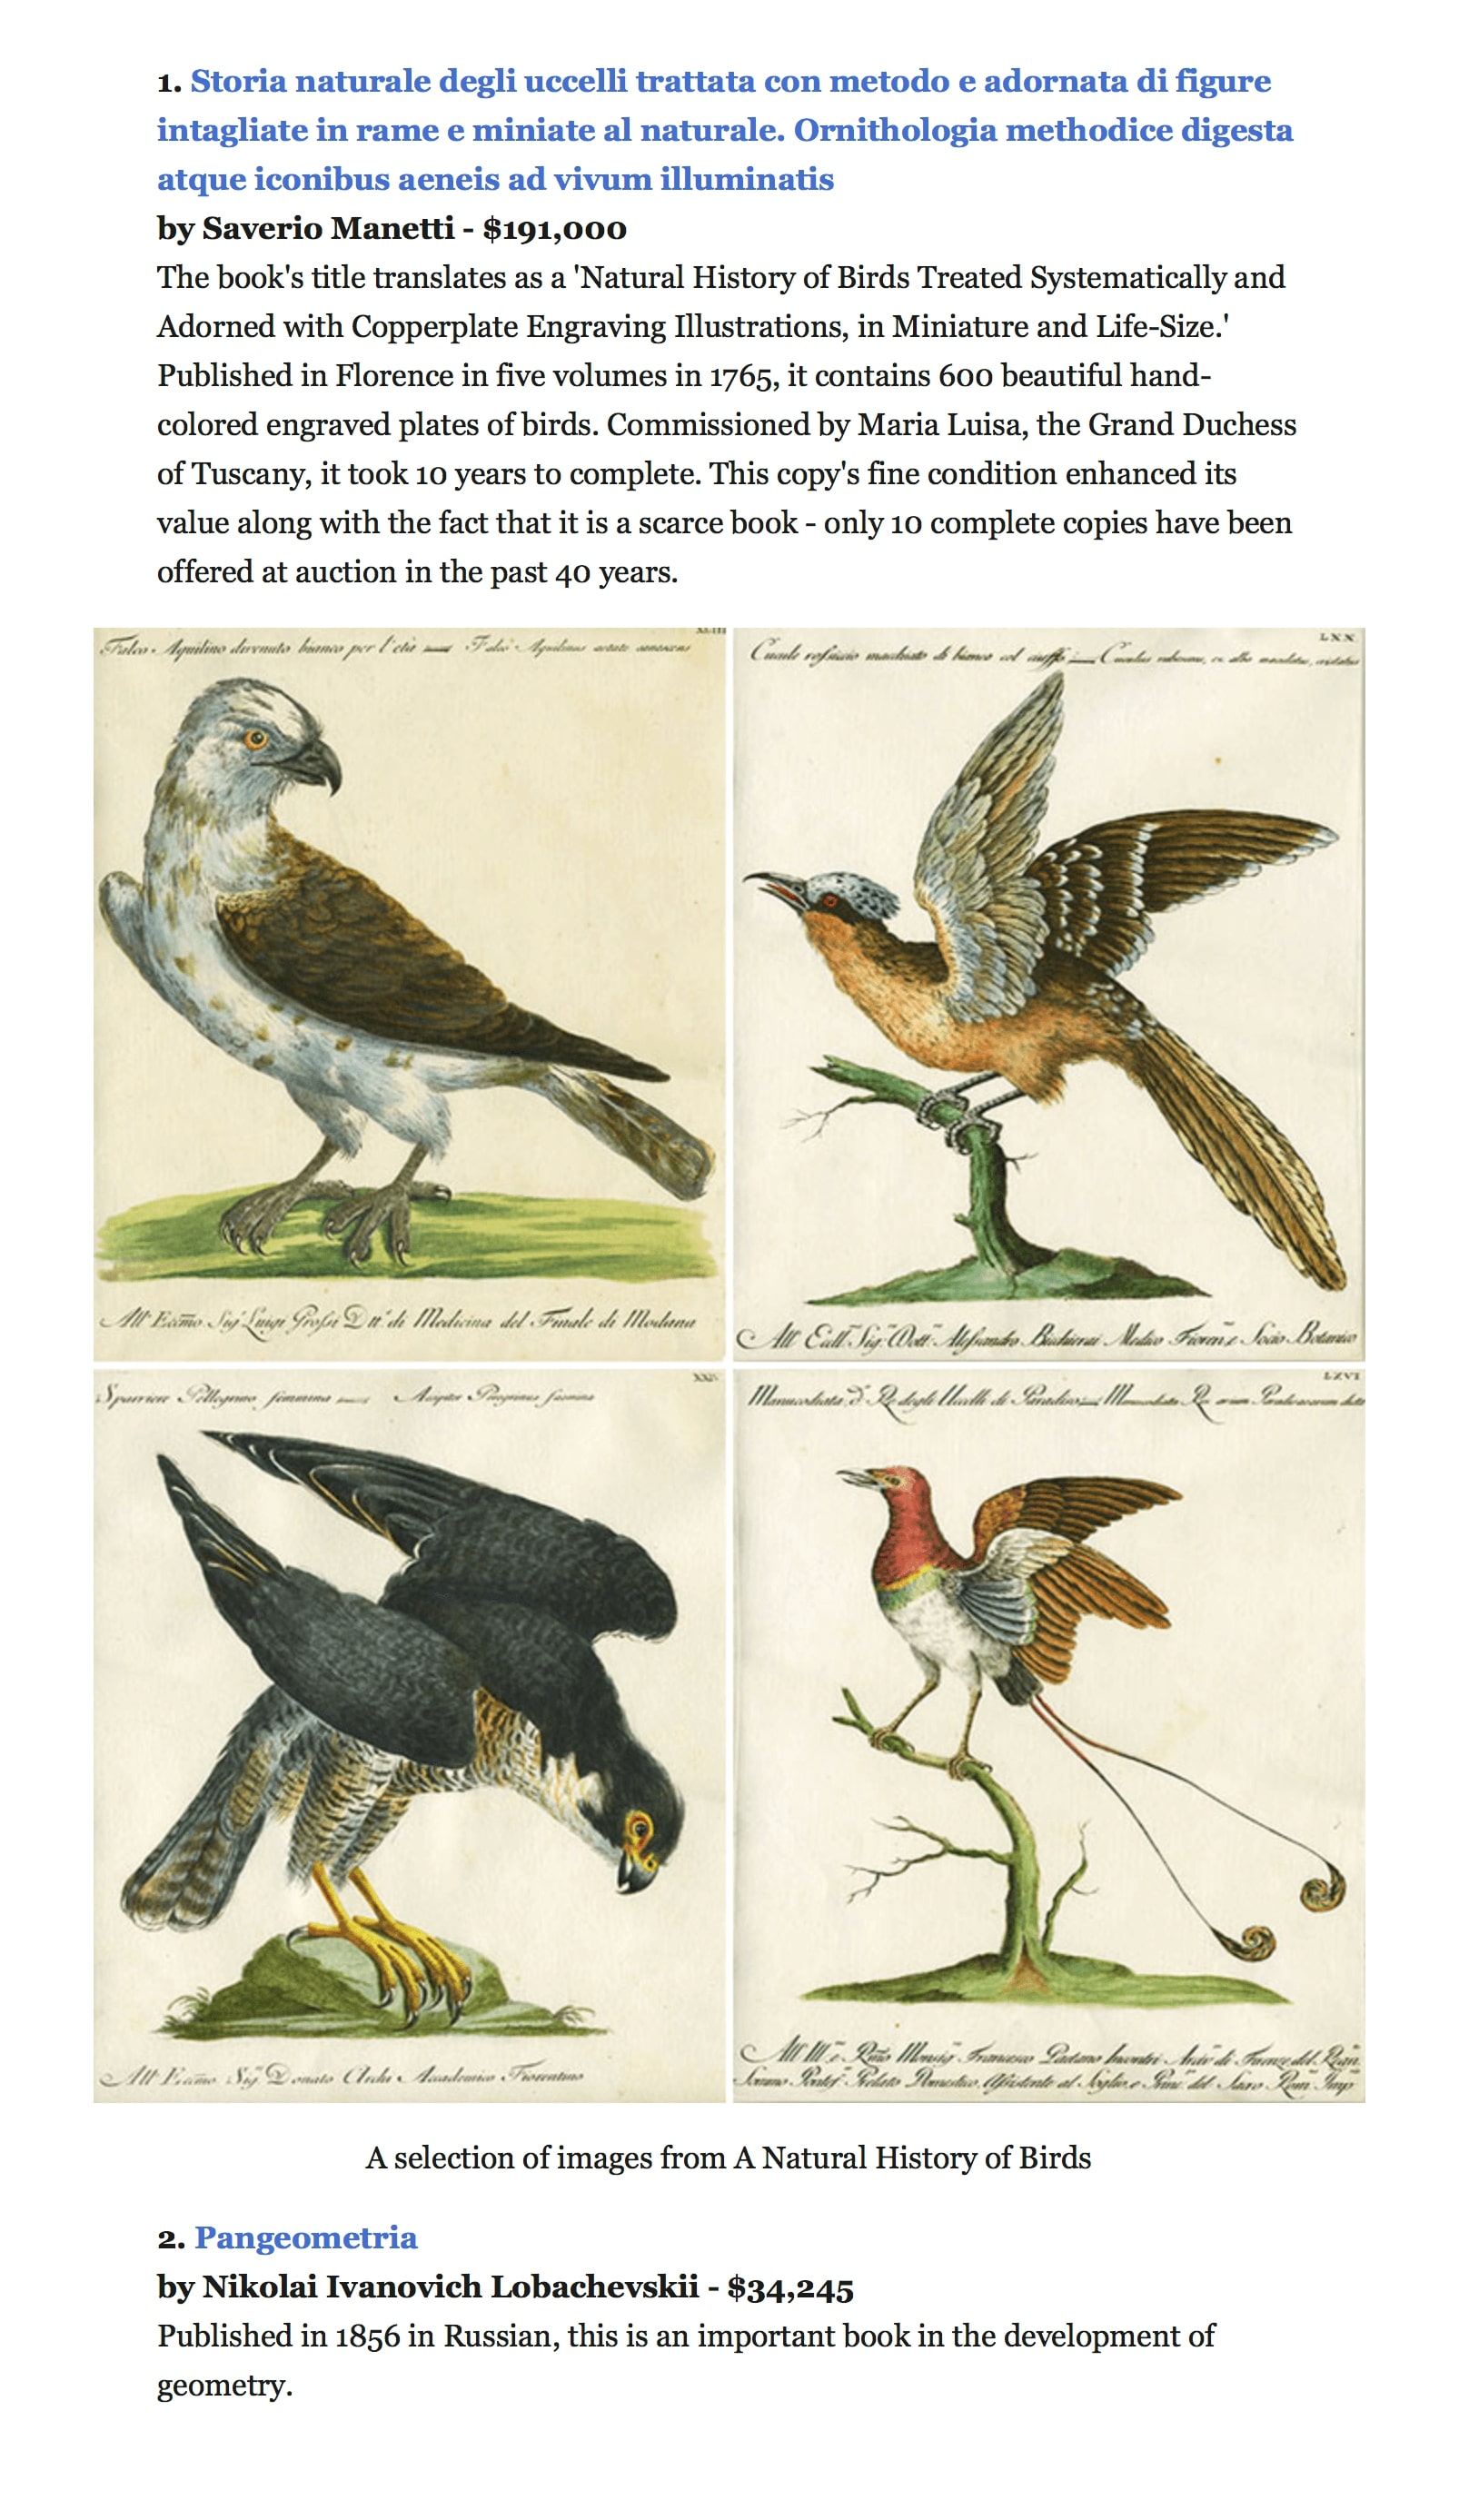 Abebooks.com — интернет-рынок, где продают книги. Самая дорогая из проданных здесь книг — исключительной красоты «Естественная история птиц». Покупателю она обошлась в 191 тысячу долларов